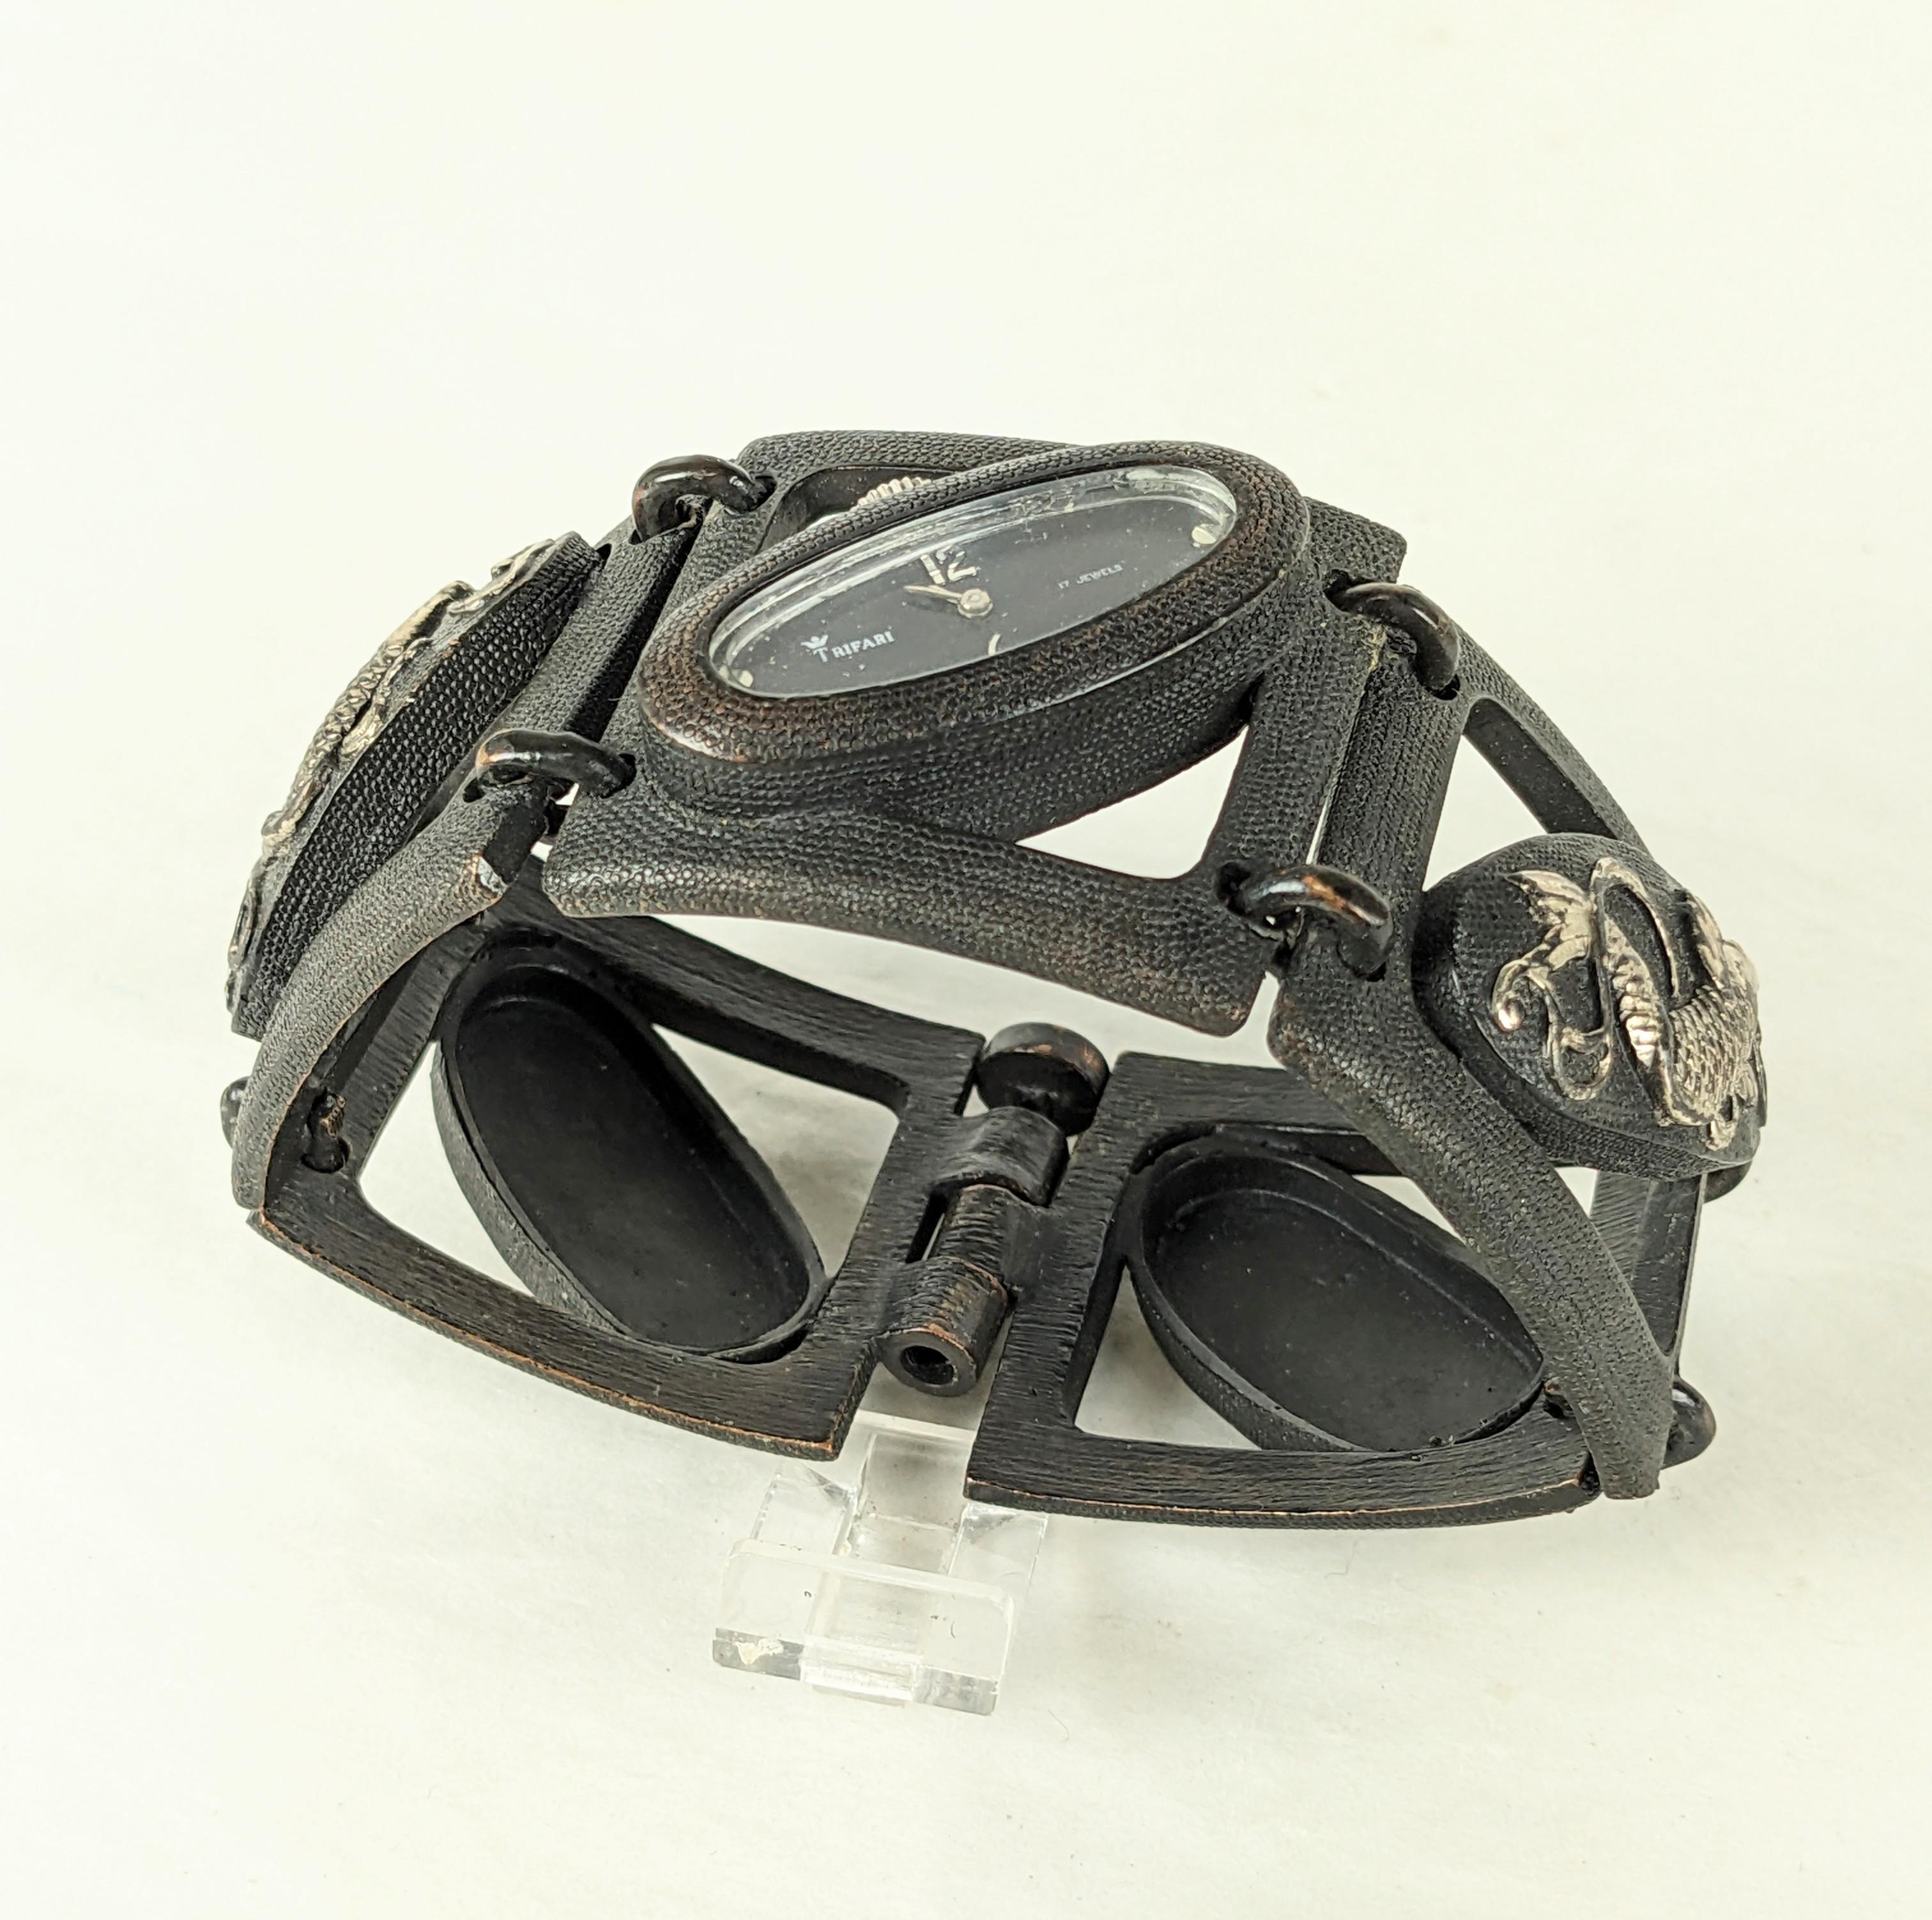 Très rare montre bracelet Diane Love for Trifari de style Shakudo des années 1970. Designs/One en métal mixte Shakudo sur métal finition bronze noirci. La montre fonctionne, 7